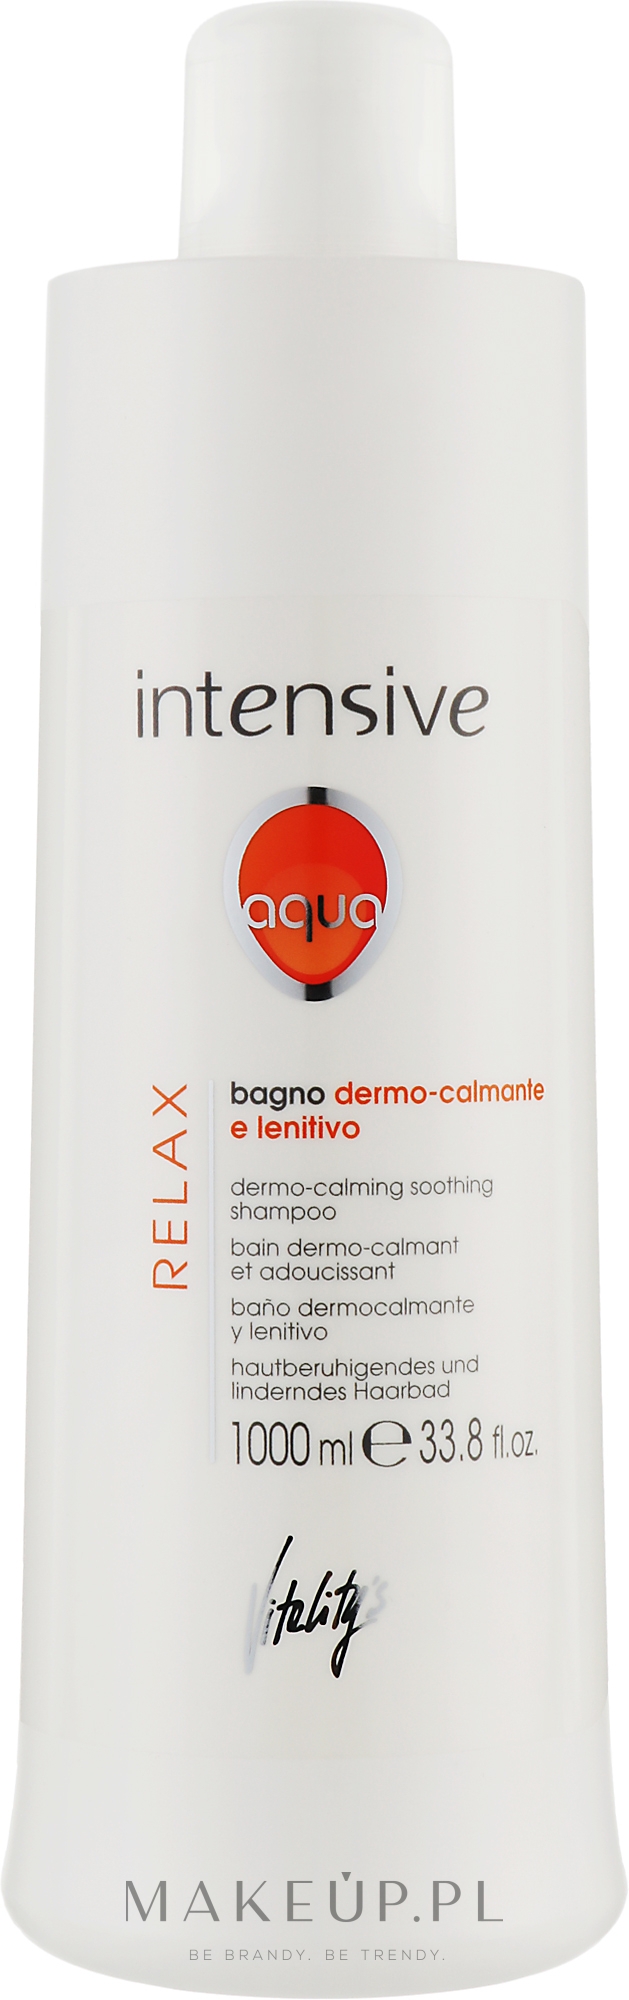 Łagodny szampon kojący - Vitality's Intensive Aqua Relax Dermo-Calming Shampoo — Zdjęcie 1000 ml